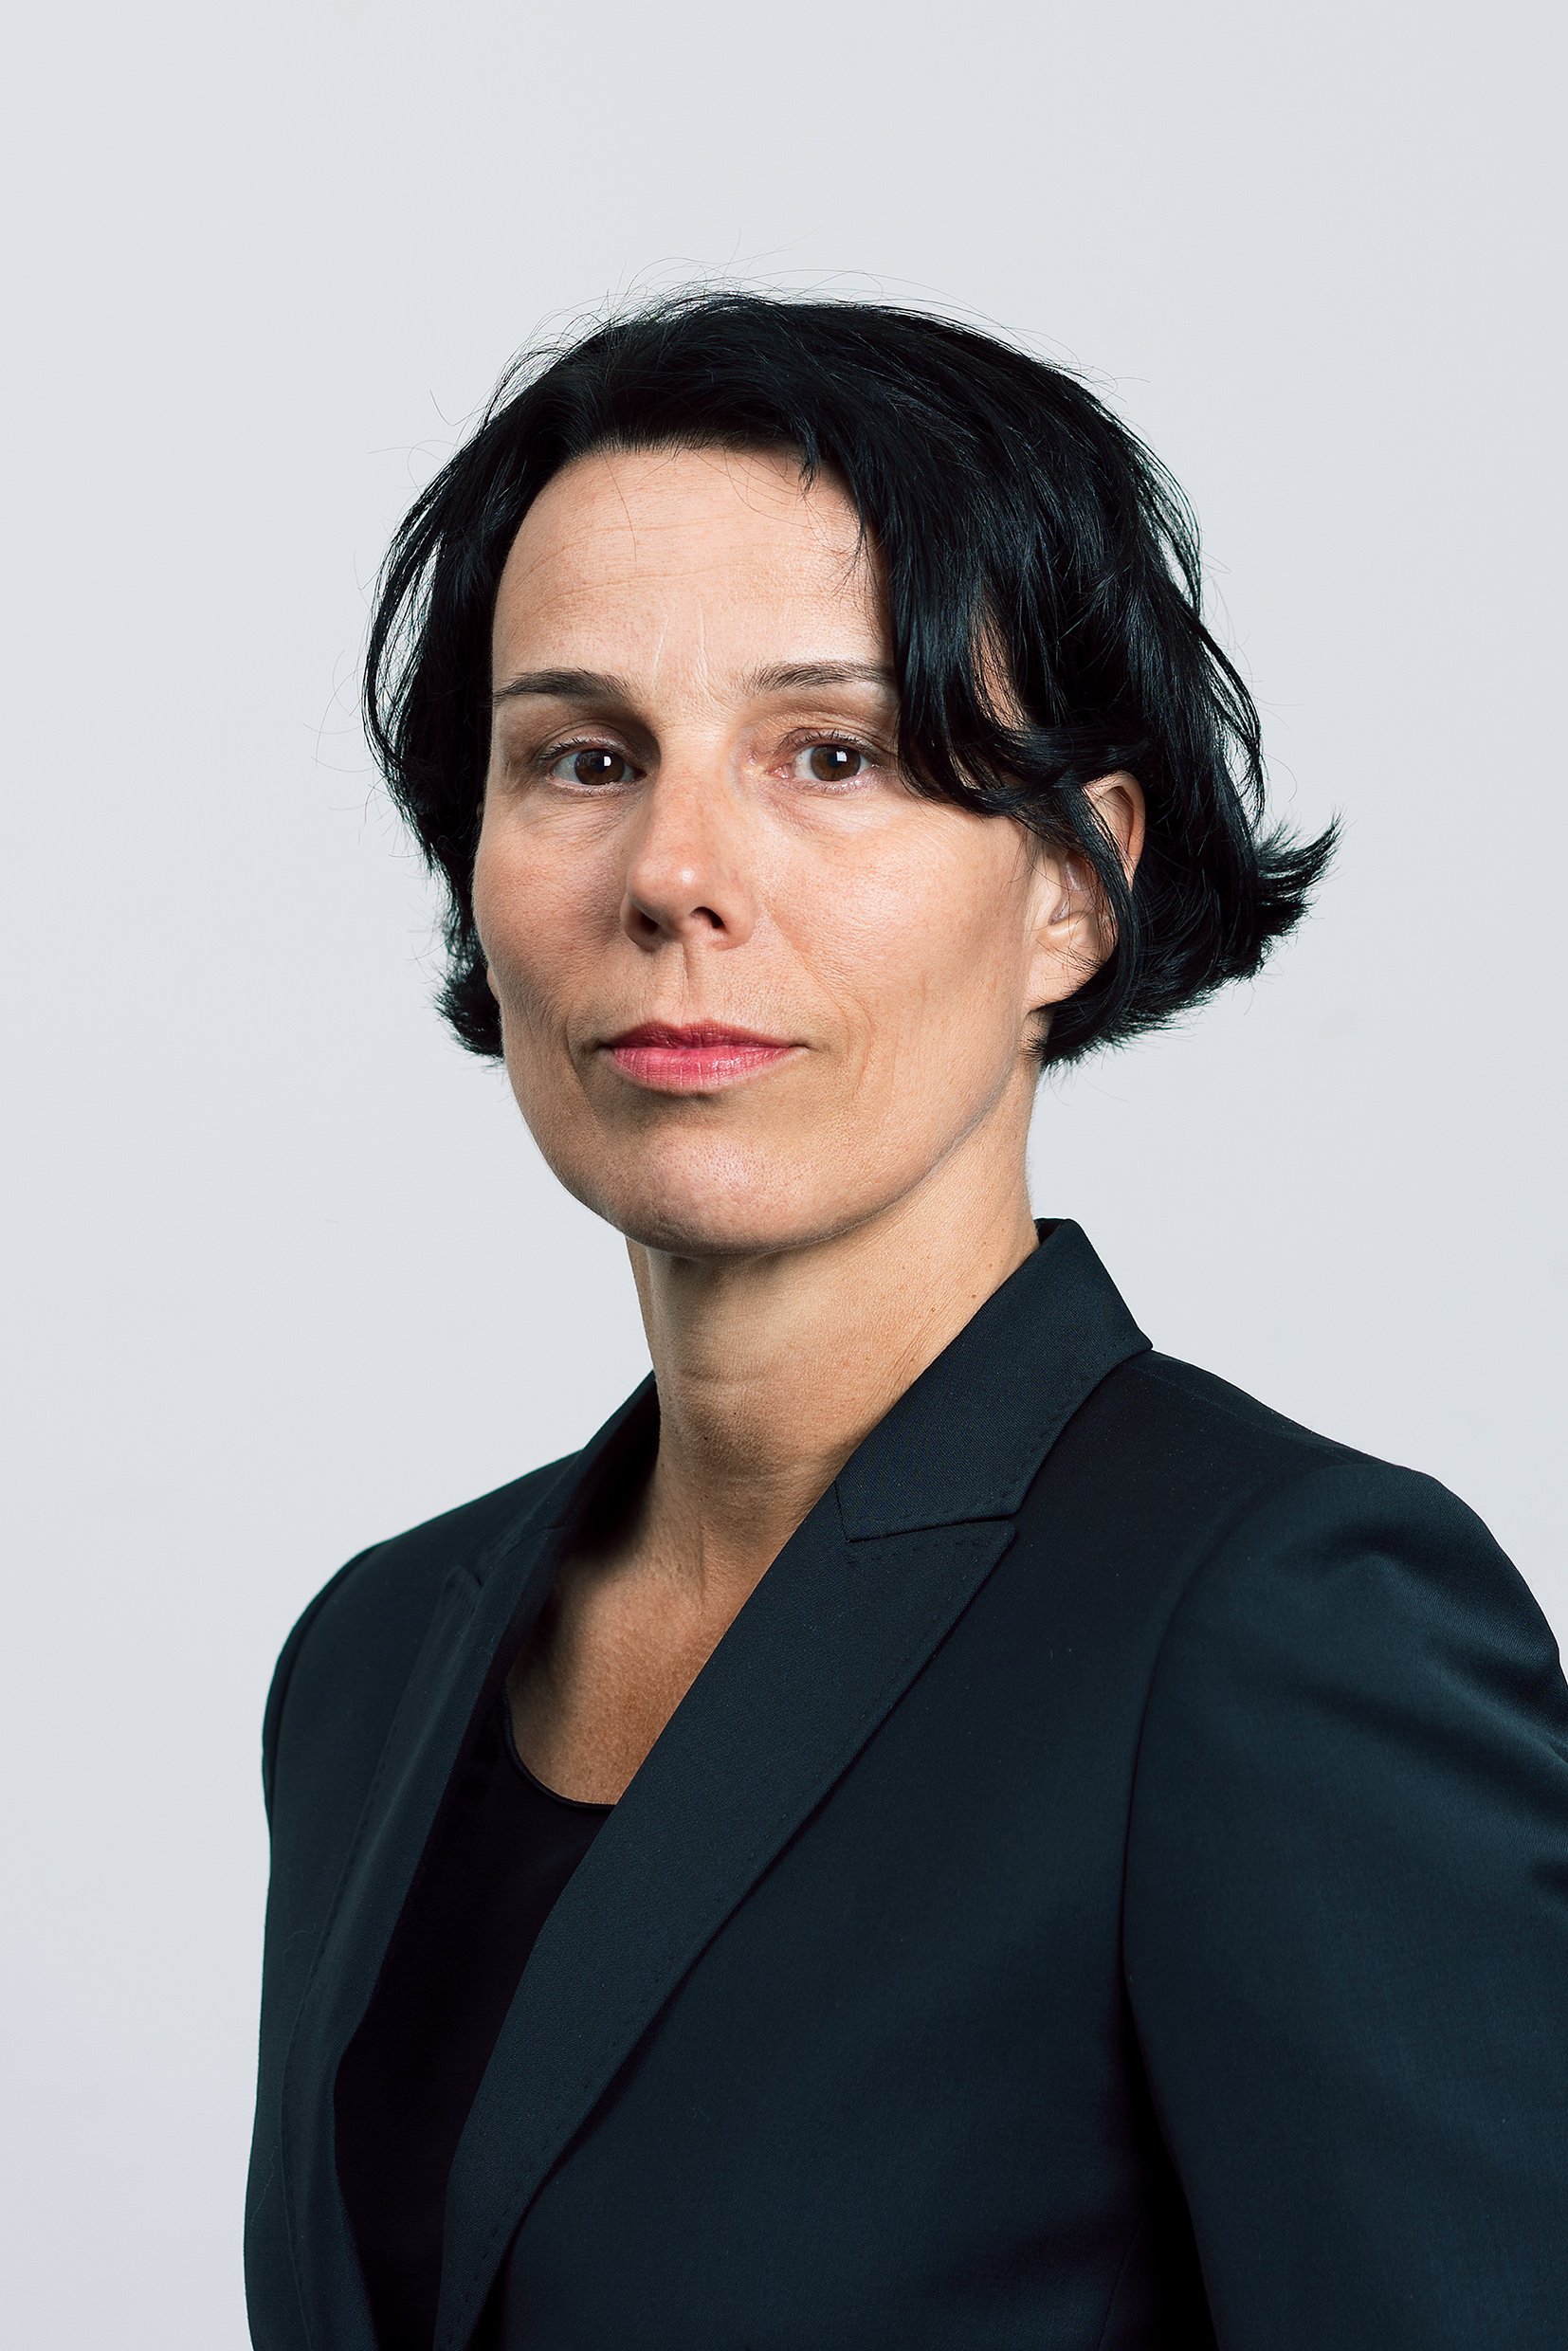 Andrea Wechlin übernimmt die Leitung der Strafvollzugsanstalt Grosshof.